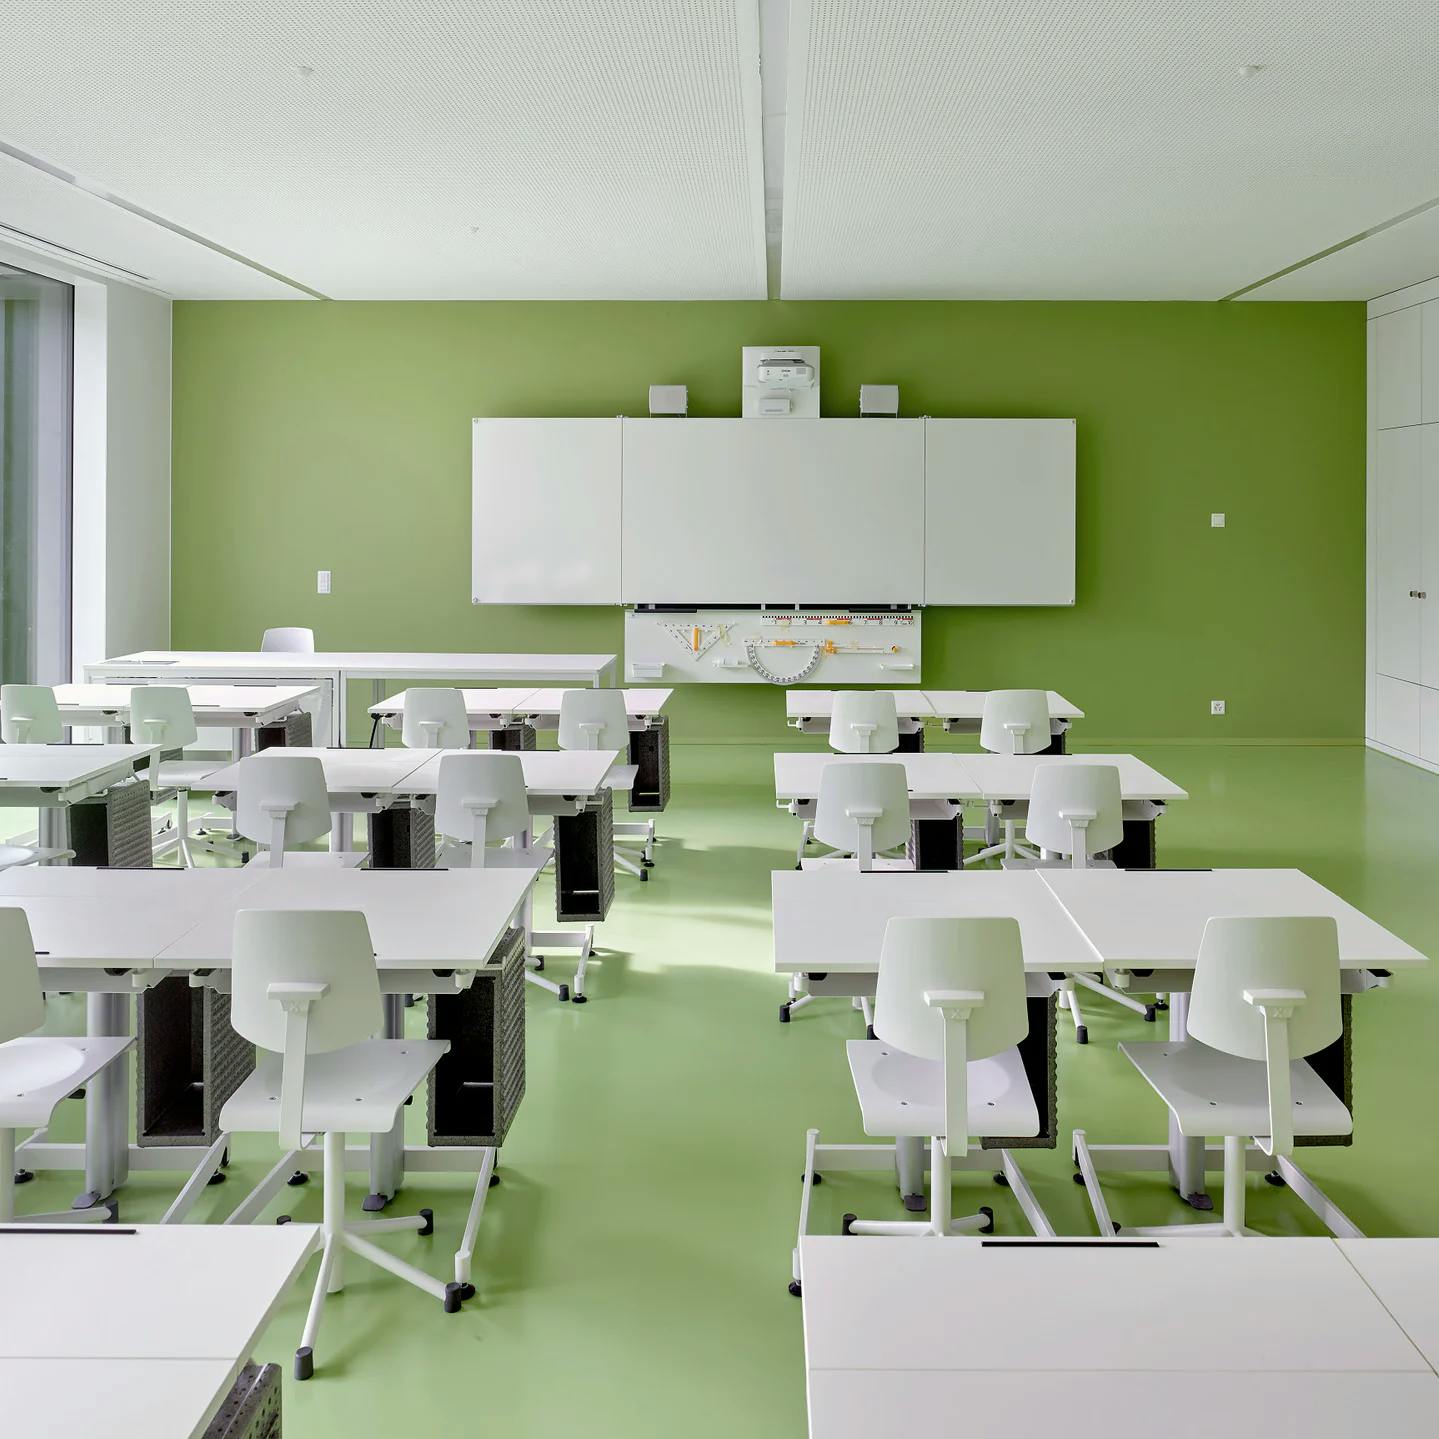 Modernes Klassenzimmer: Ein Schulzimmer mit grüner Wand und Boden und weissen Möbeln im umgebauten Vignettaz-Schulhauses in Freiburg.